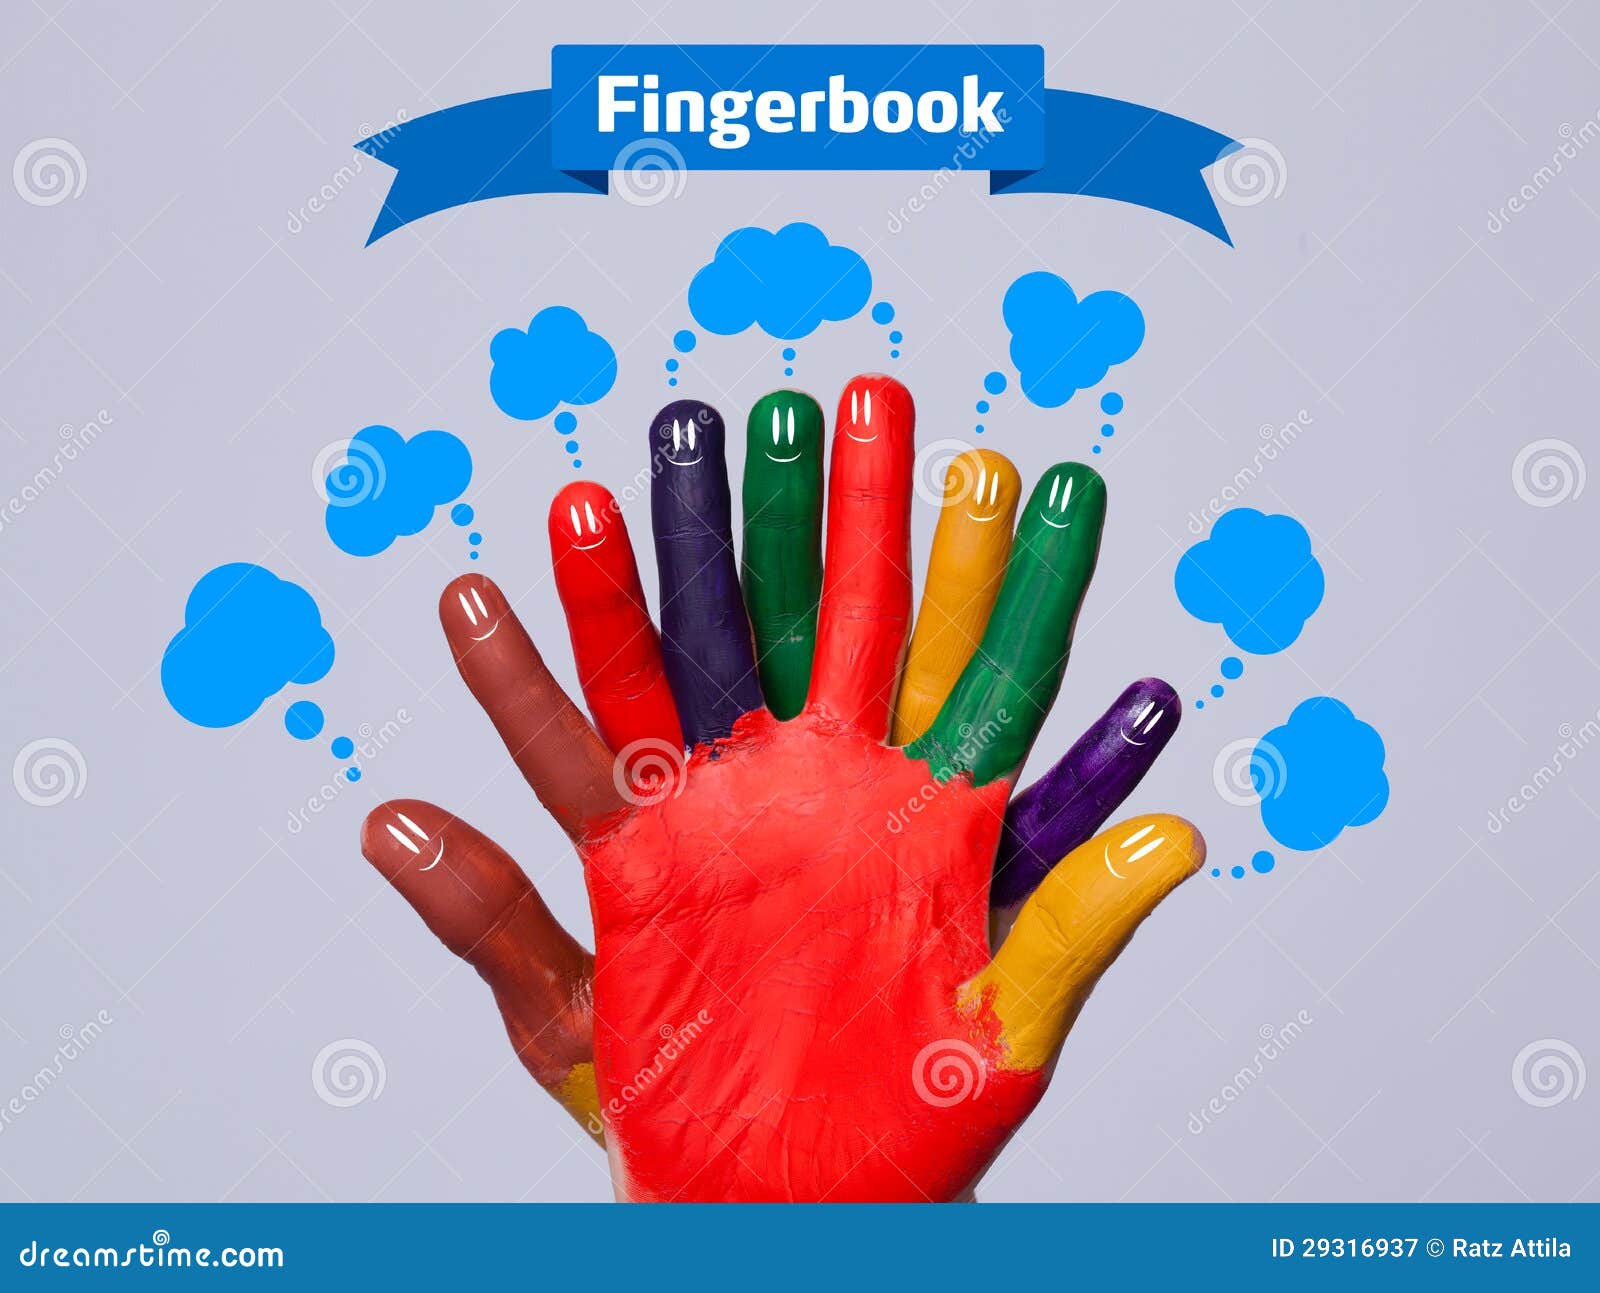 Smiley felizes coloridos do dedo com sinal do fingerbook e bolhas azuis